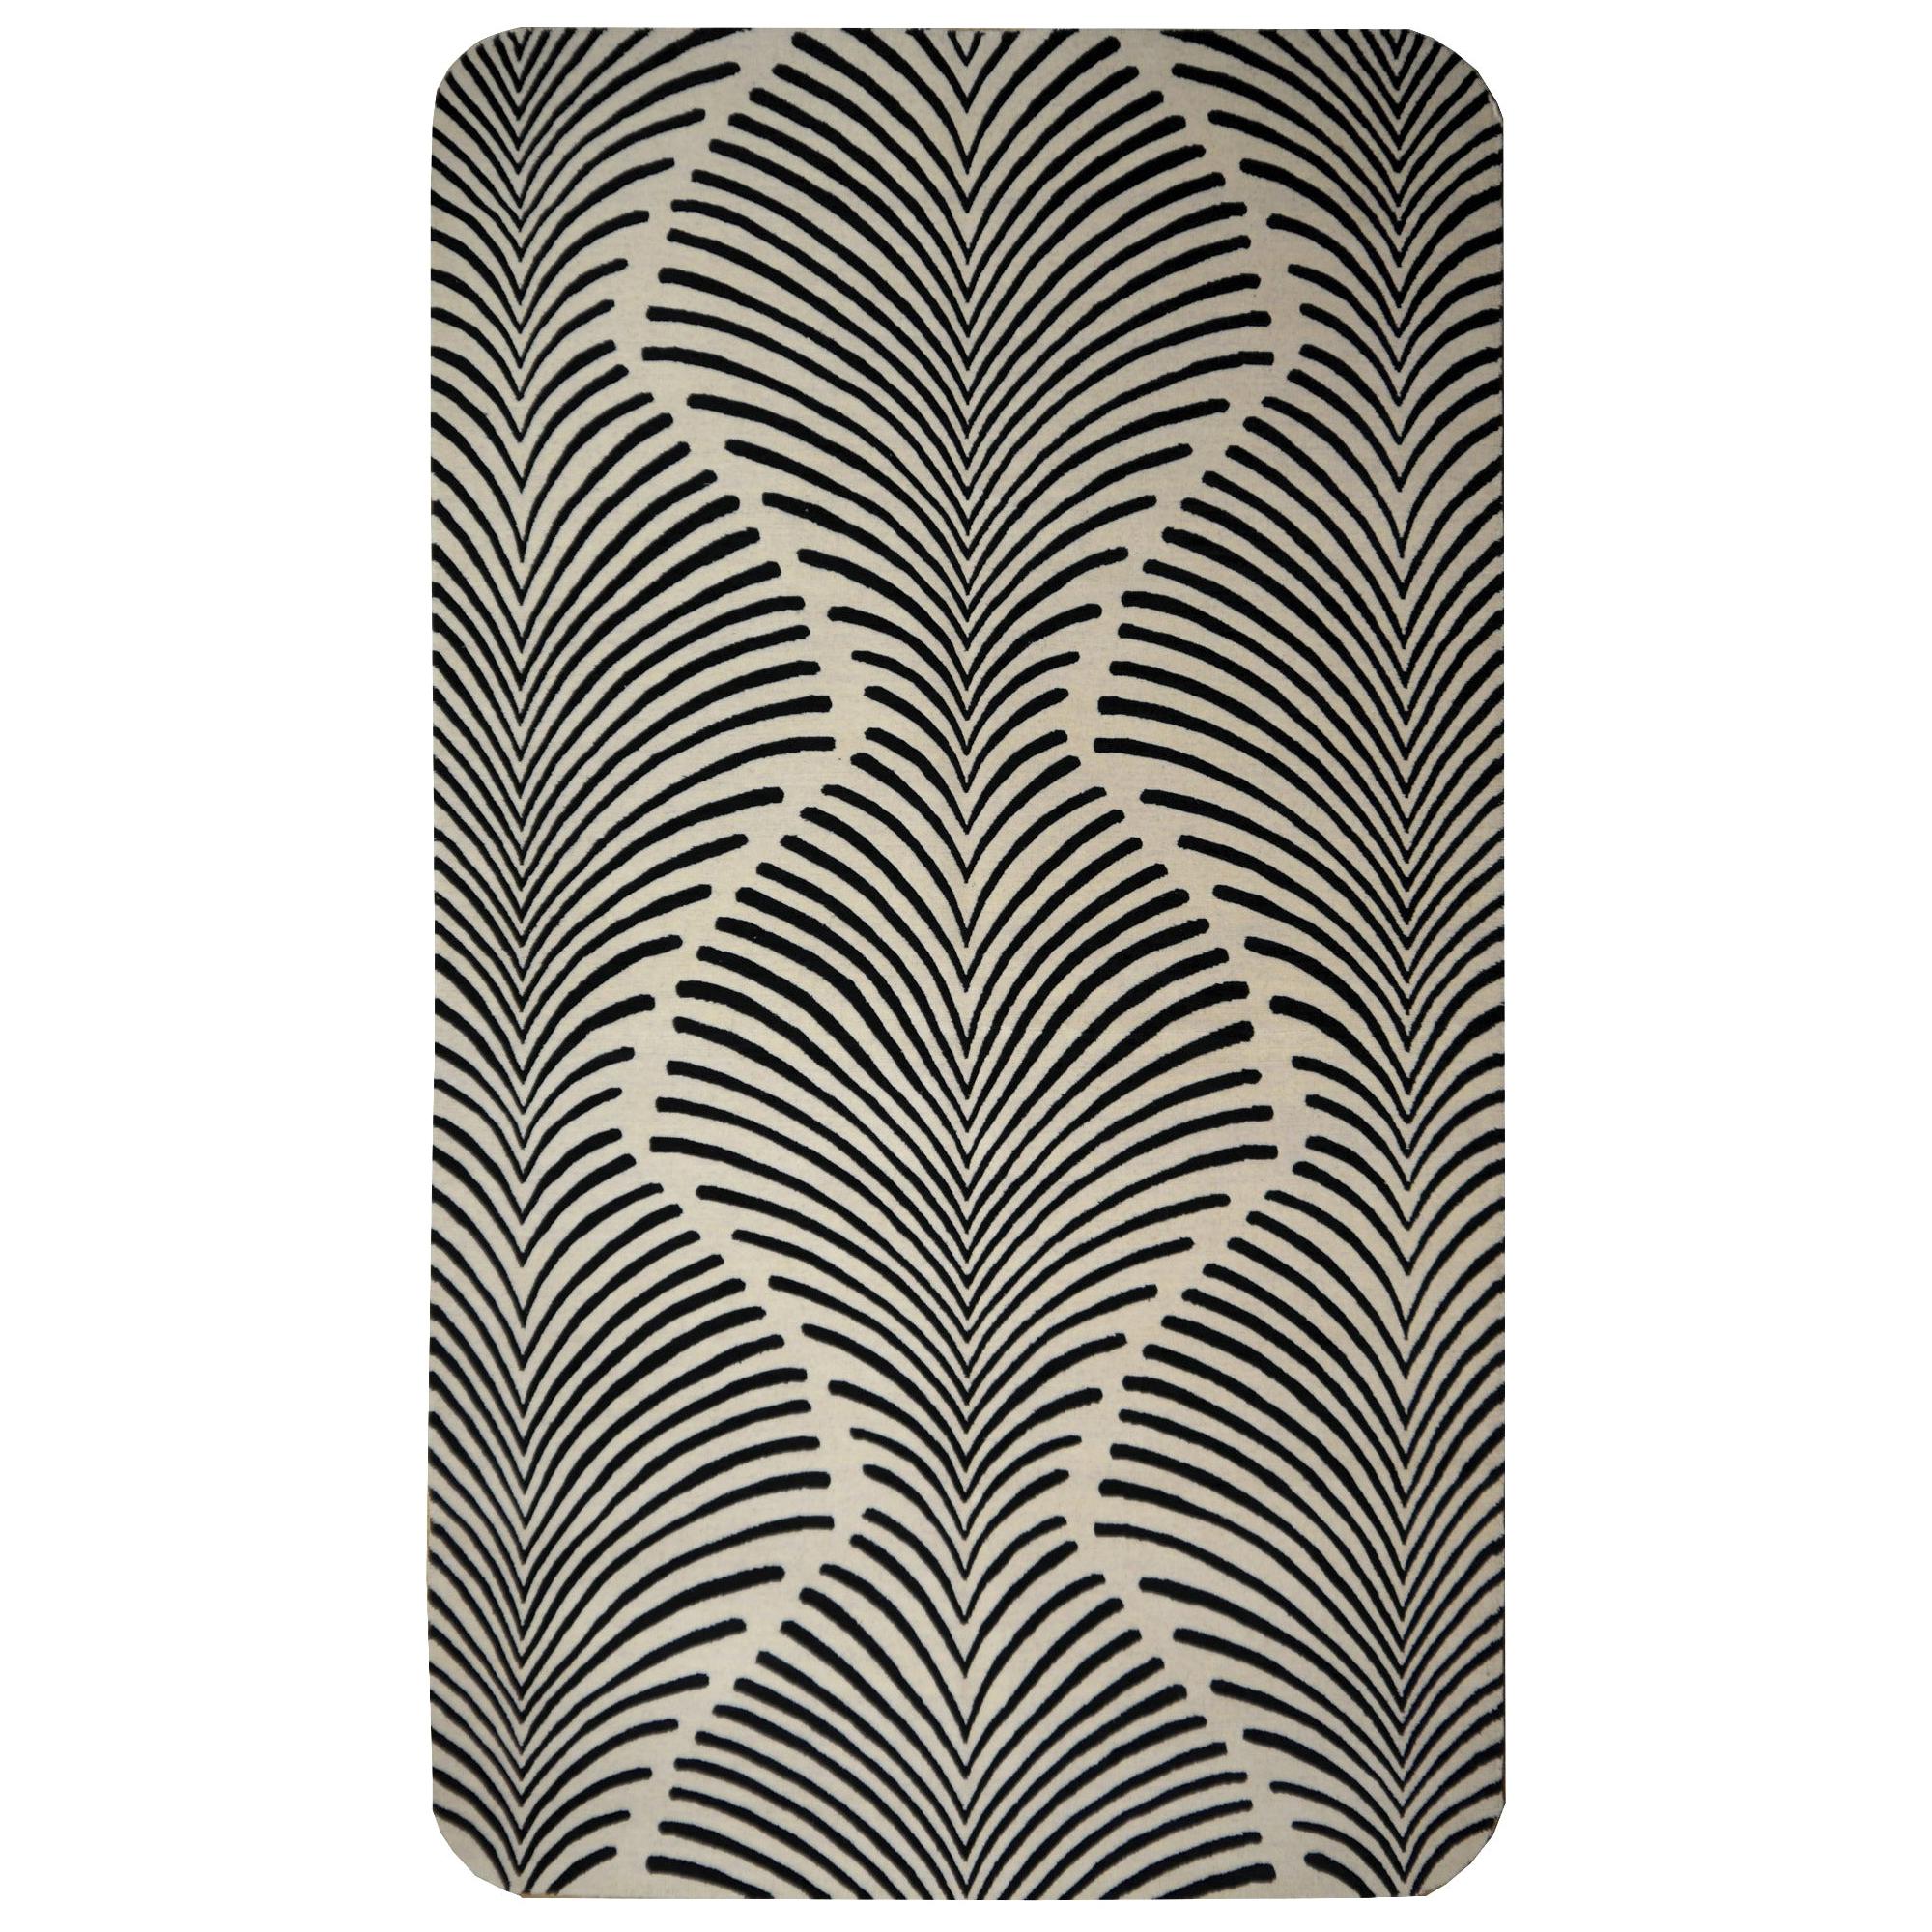 Zebra-Teppich, handgeknüpft im Stil des Art Deco Design